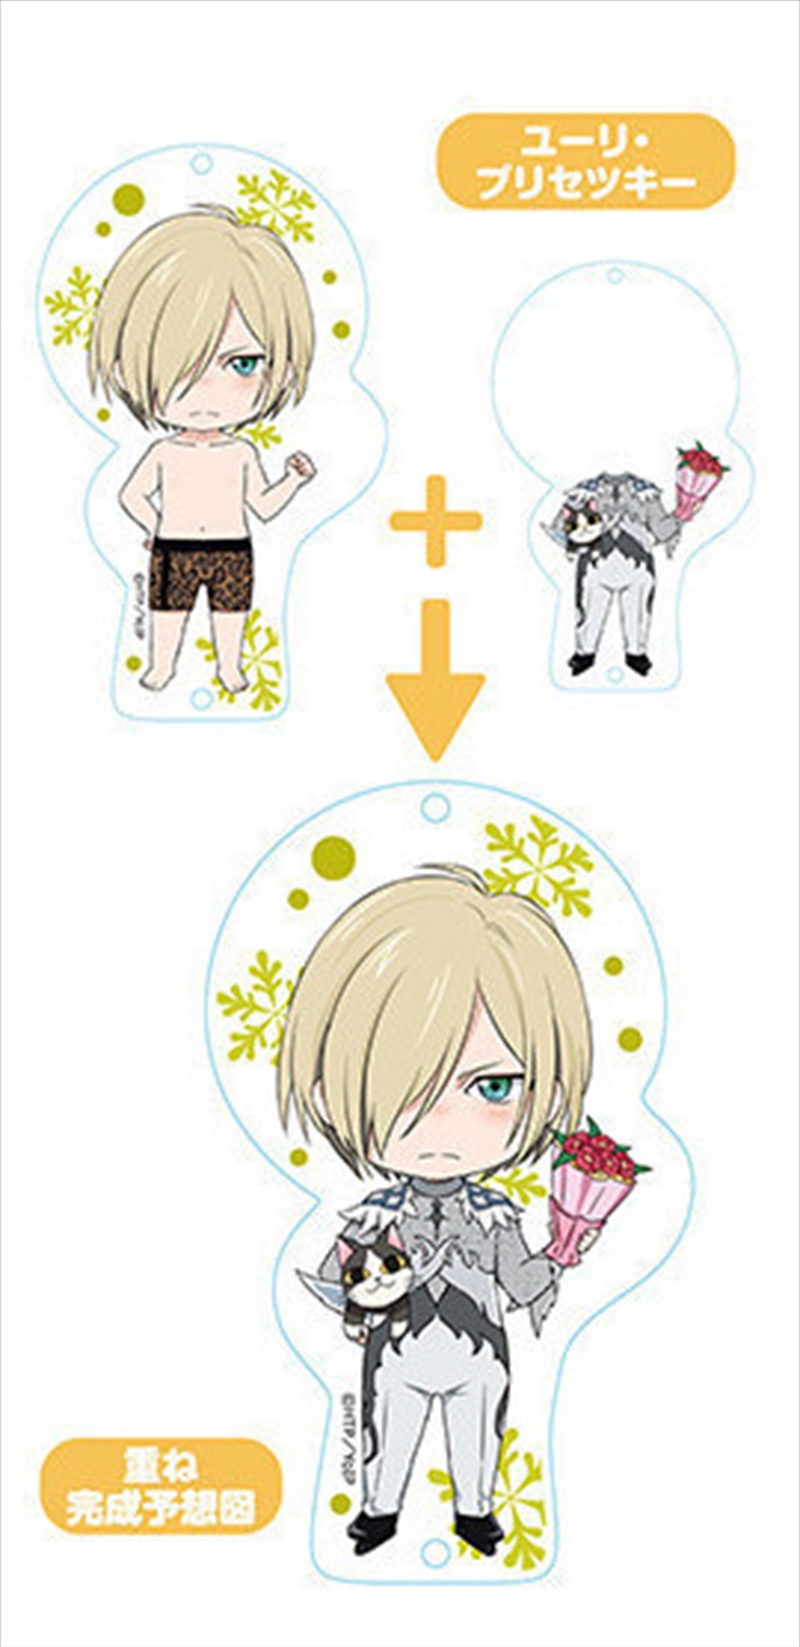 Yuri!!! On Ice Nendoroid Plus Dress Up Acrylic Key Ring: Yuri!!! On Ice (Yuri Plisetsky)/Product Detail/Figurines